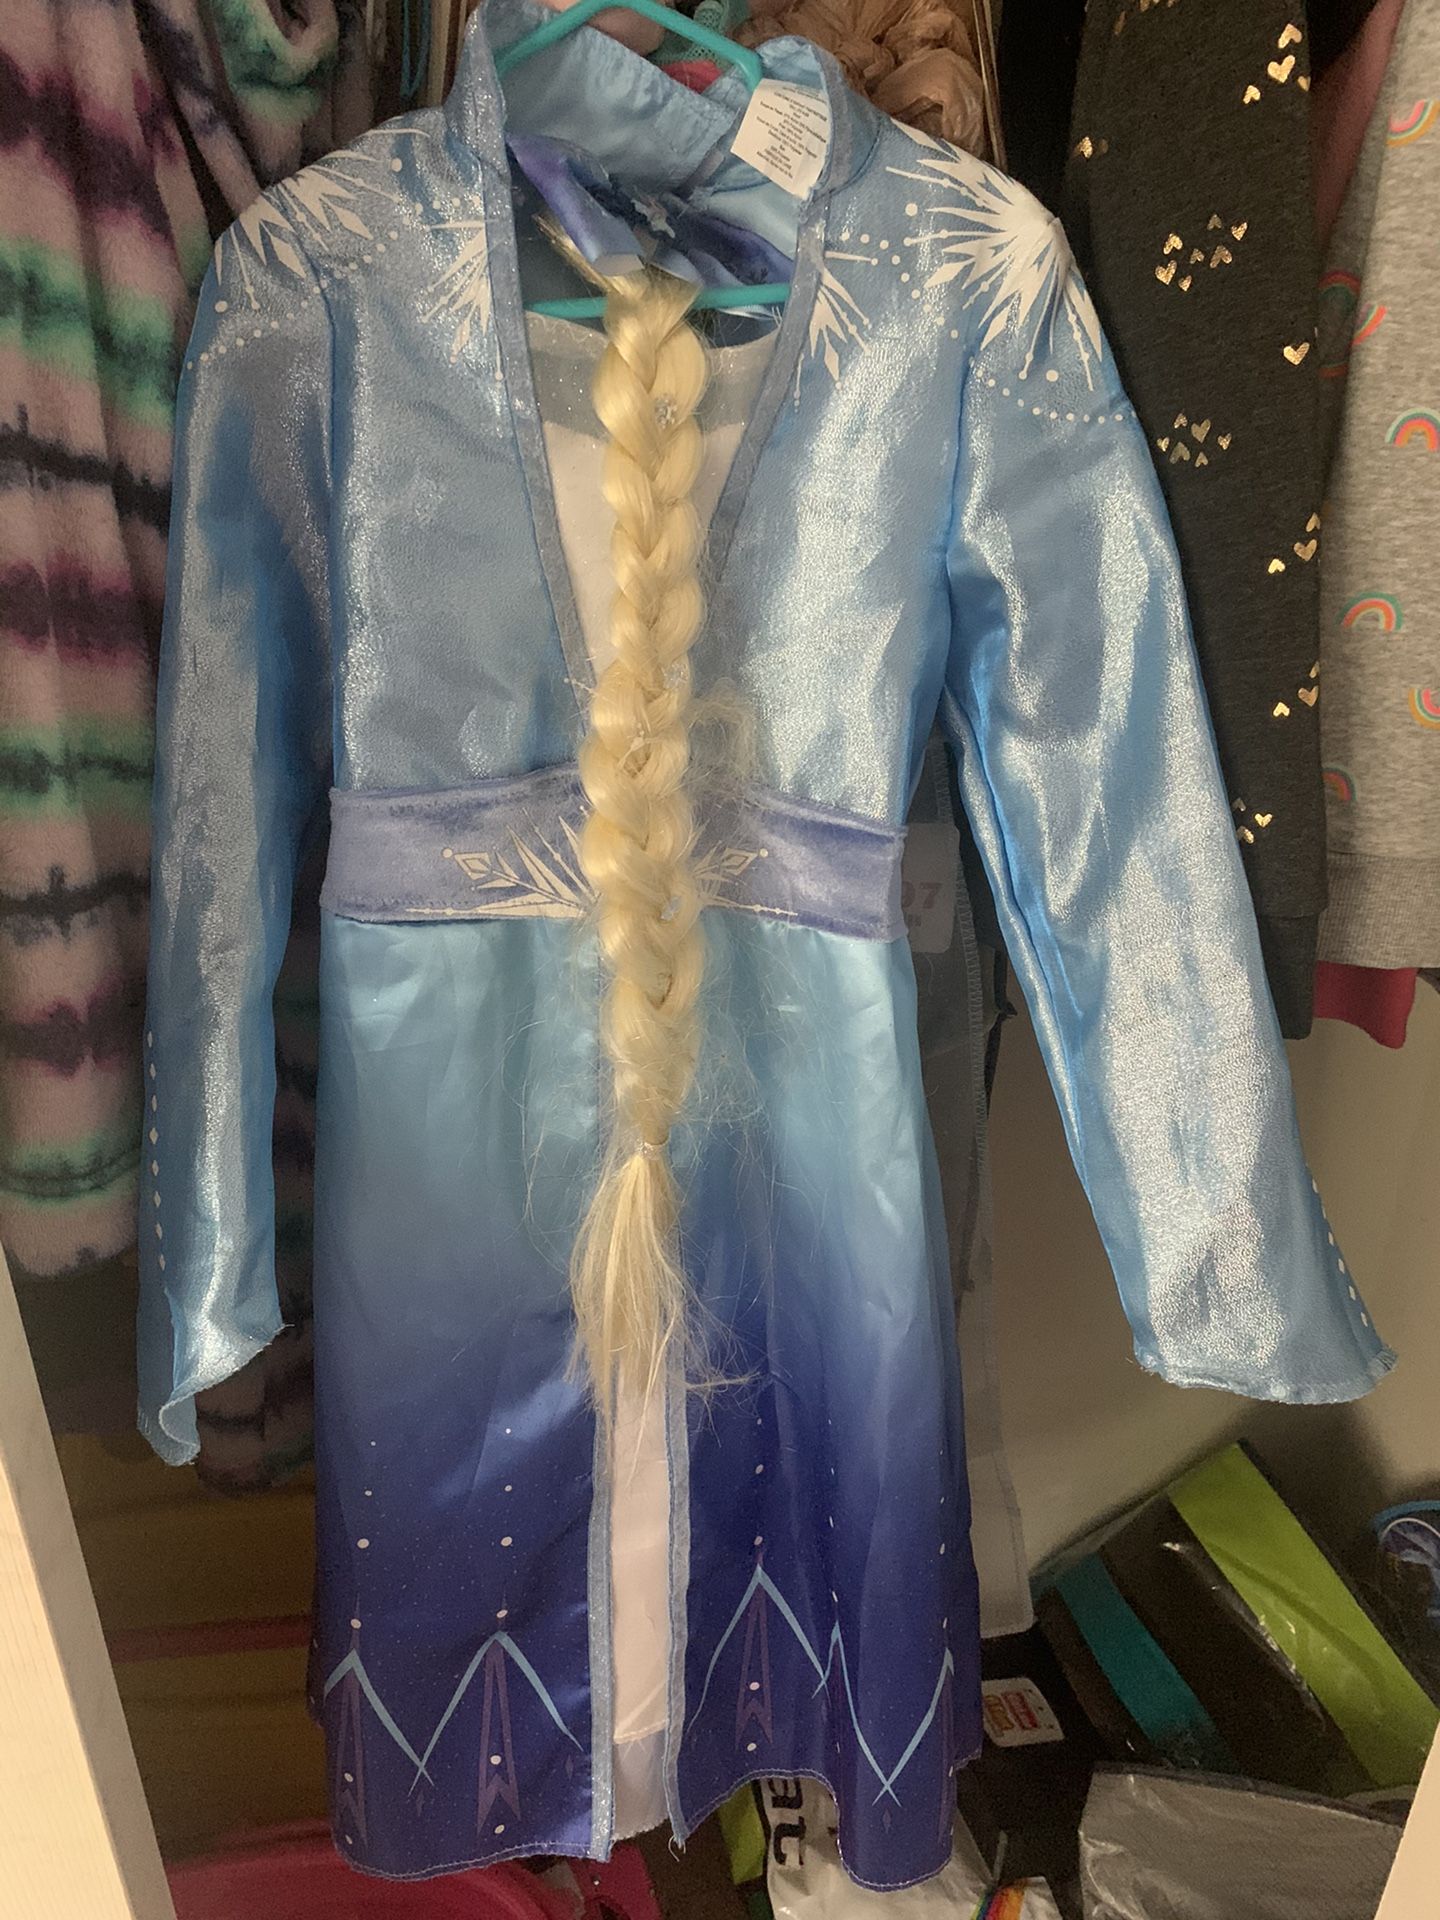 Frozen 2 Dress with Elsa Hair